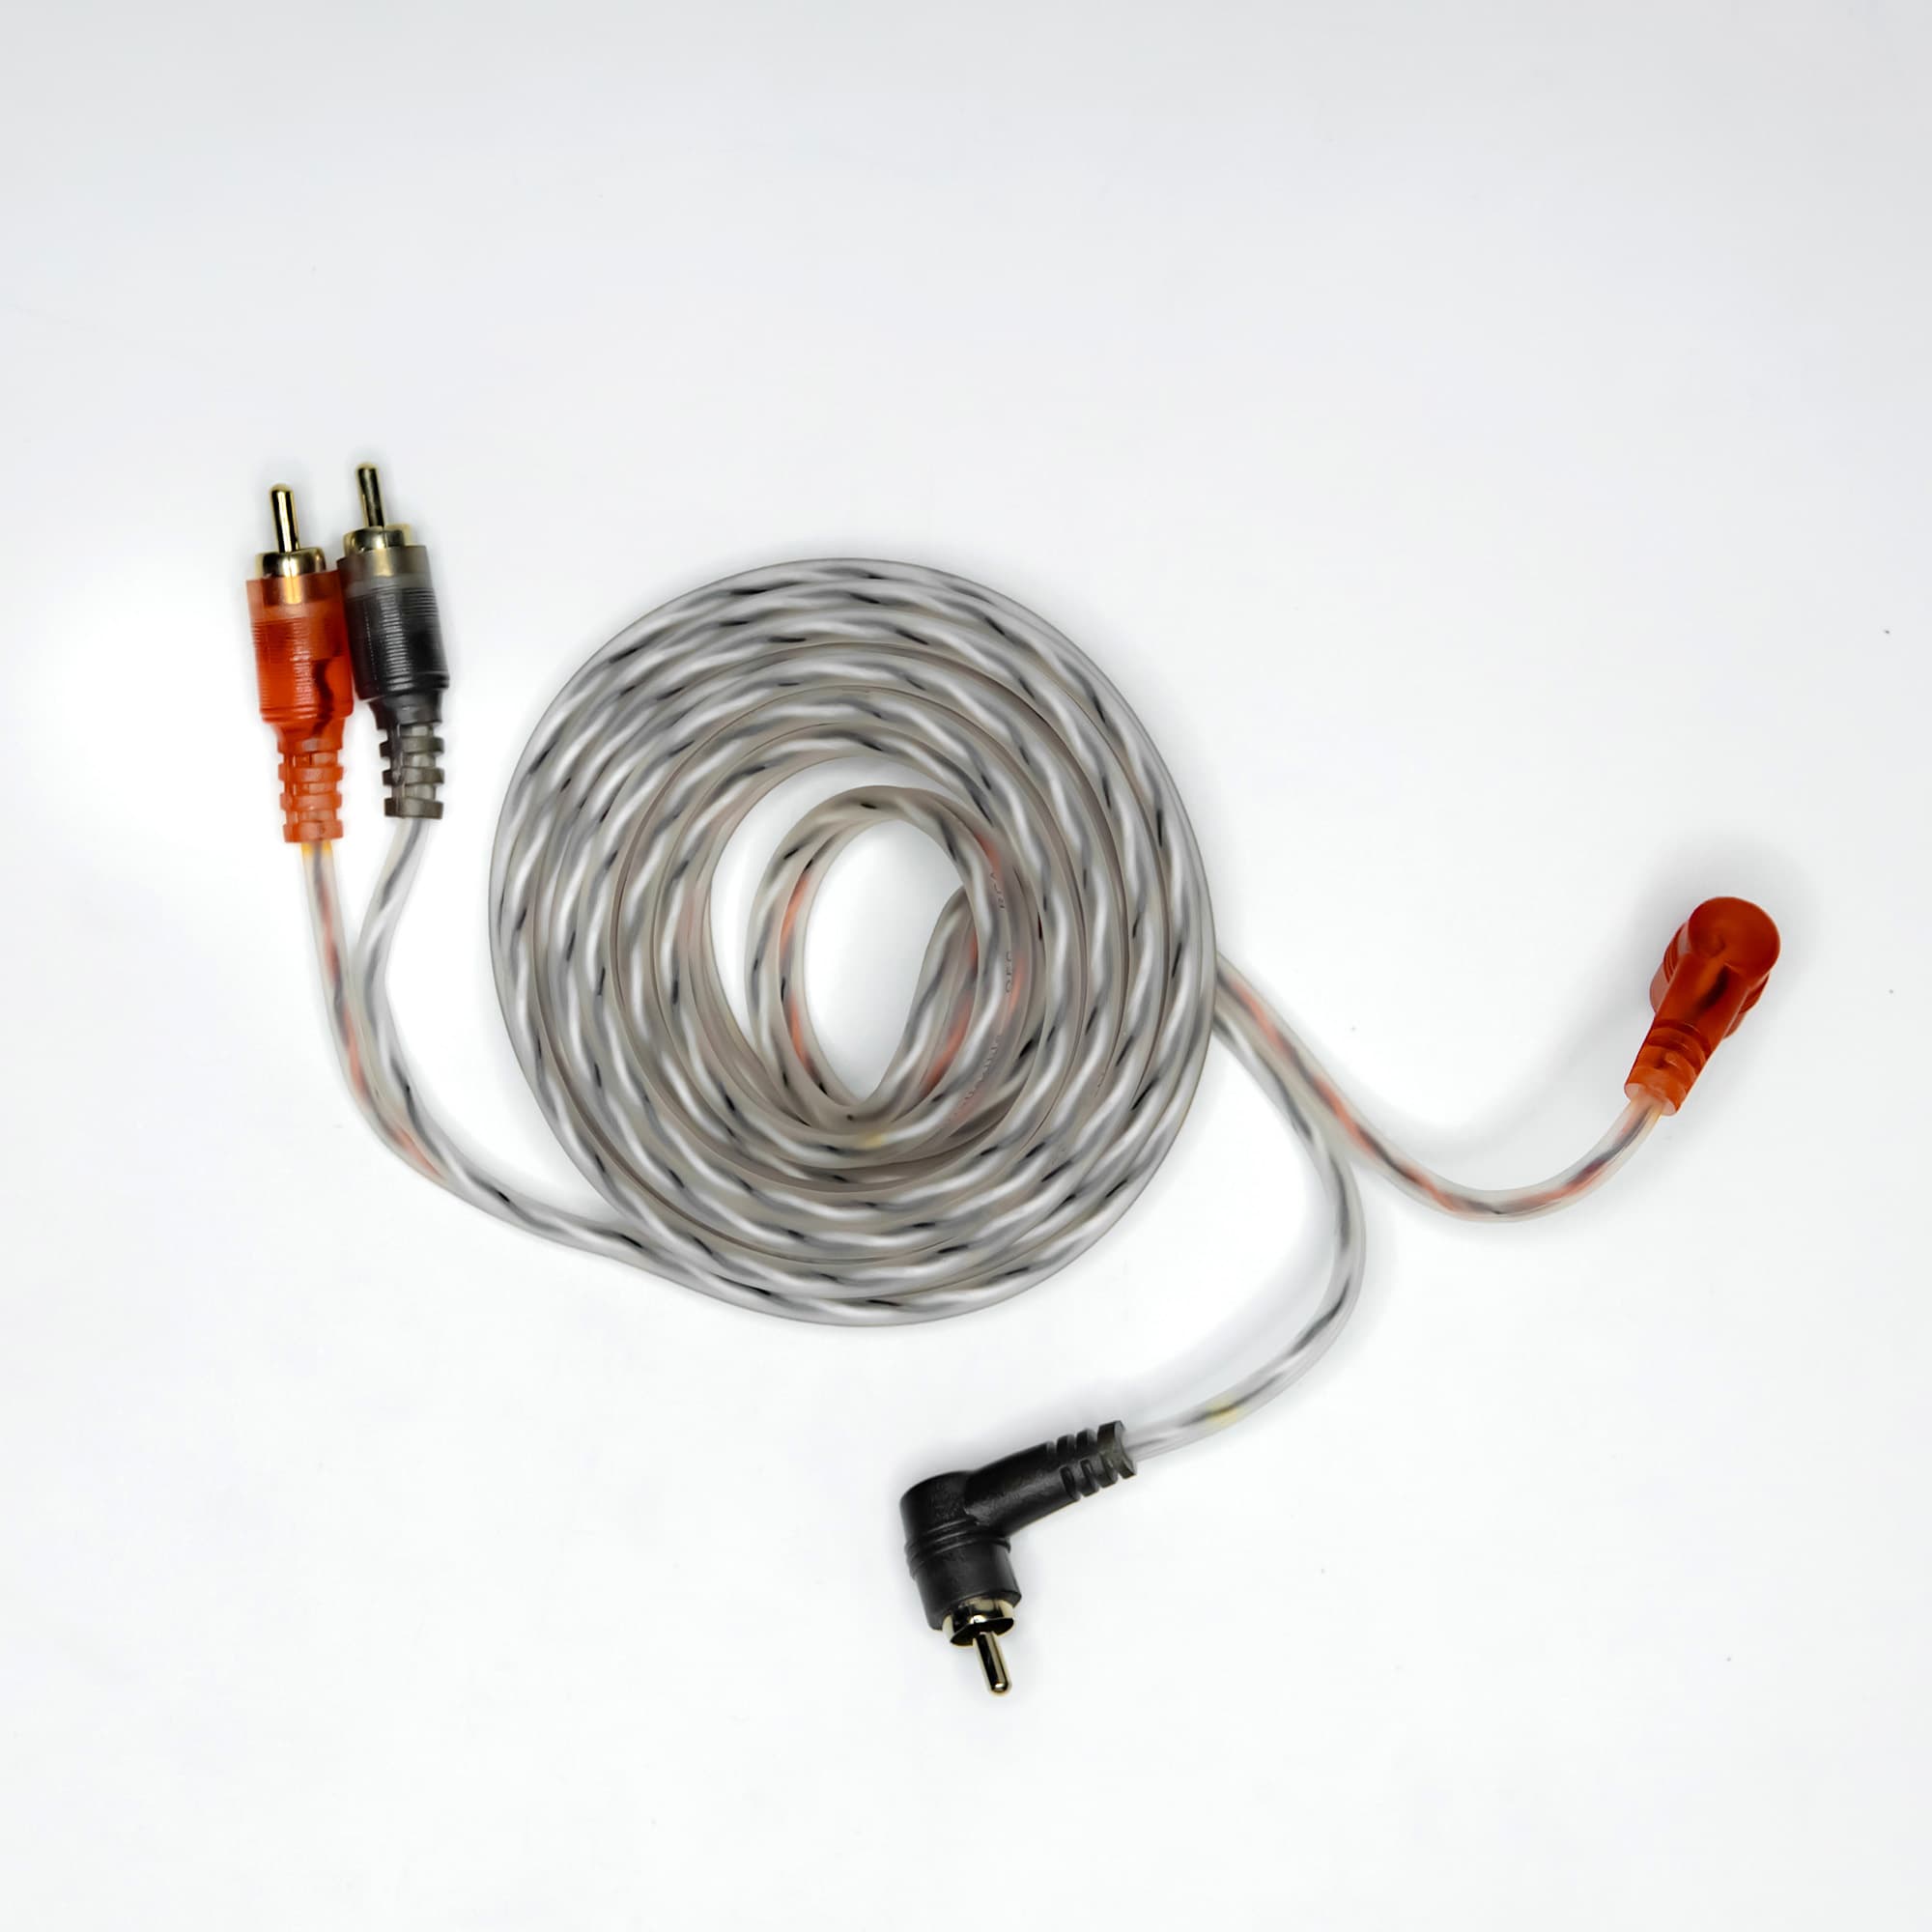 Провод соединительный AMP MRCA-3 Межблочный кабель-медь (3м) купить в интернет магазине AMPGROUP.  Провод соединительный AMP MRCA-3 Межблочный кабель-медь (3м)   цены, большой каталог, новинки.
